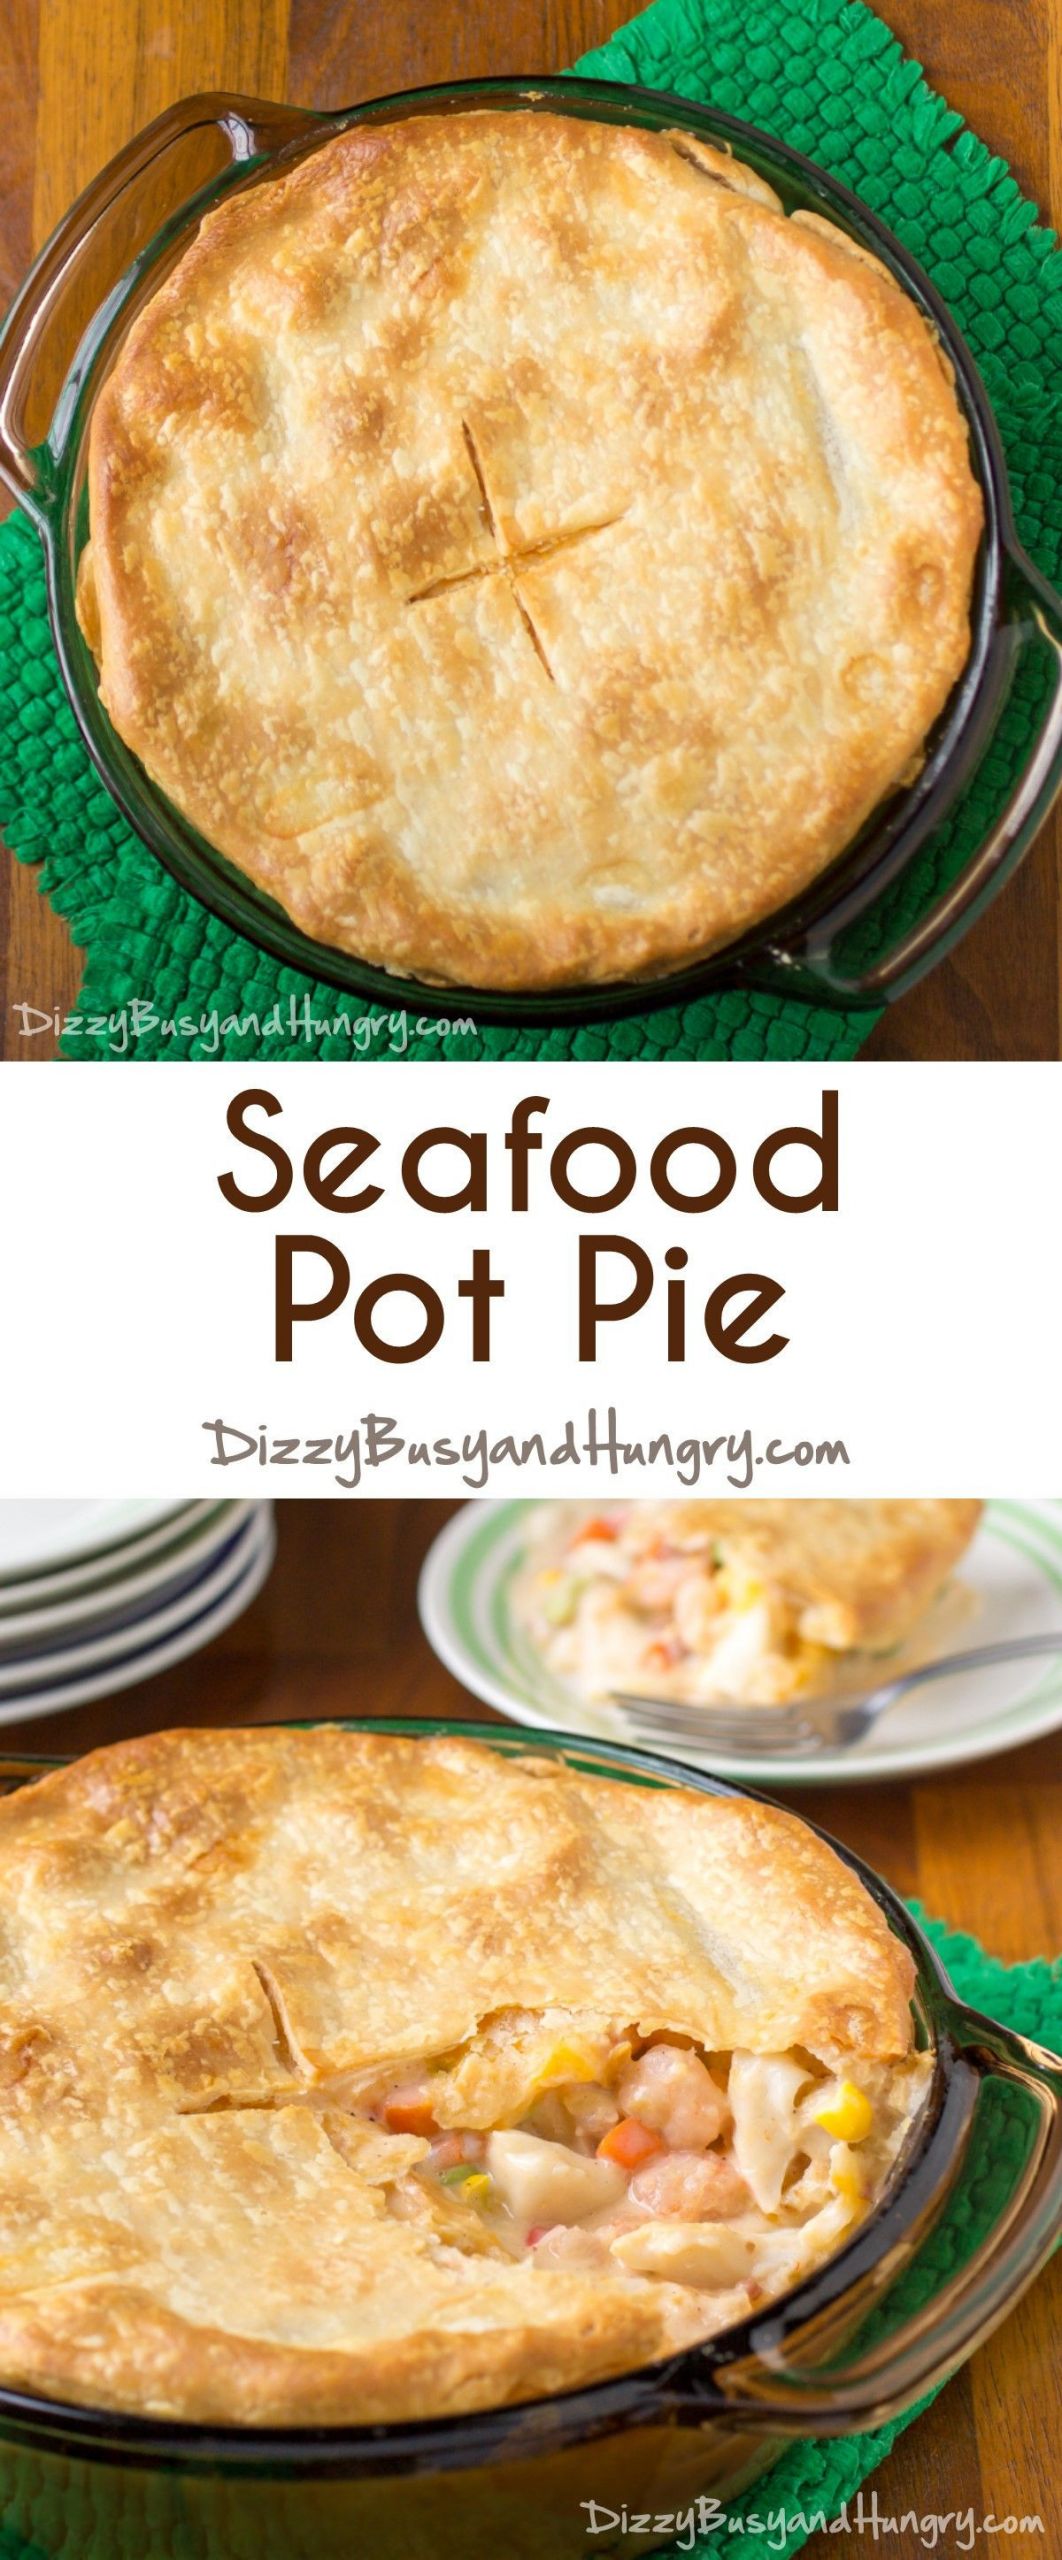 Seafood Pie Recipes
 Seafood Pot Pie Recipe